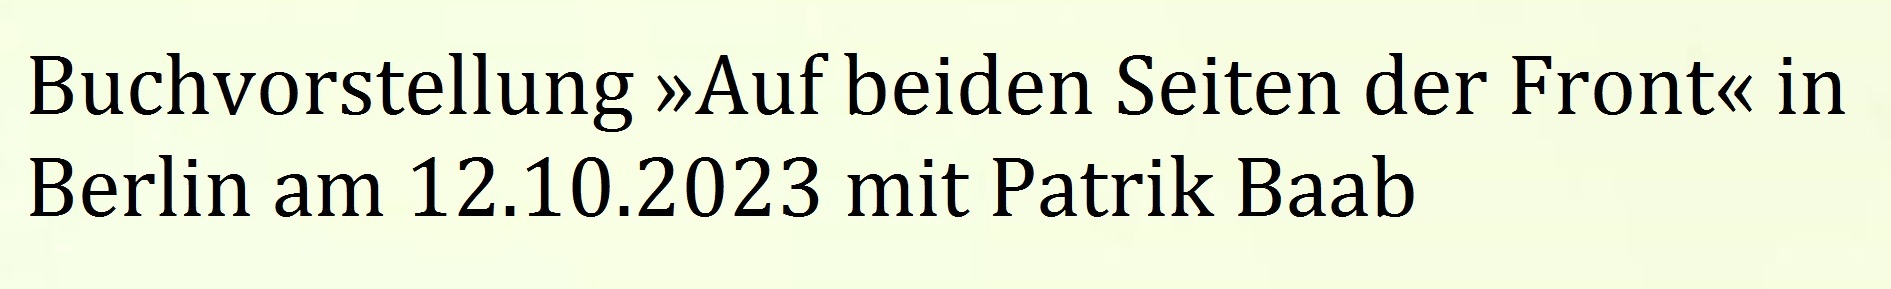 Buchvorstellung »Auf beiden Seiten der Front« in Berlin am 12.10.2023 mit Patrik Baab - Link zum Video: https://www.youtube.com/watch?v=WMr3h7C8qJA&t=48s 